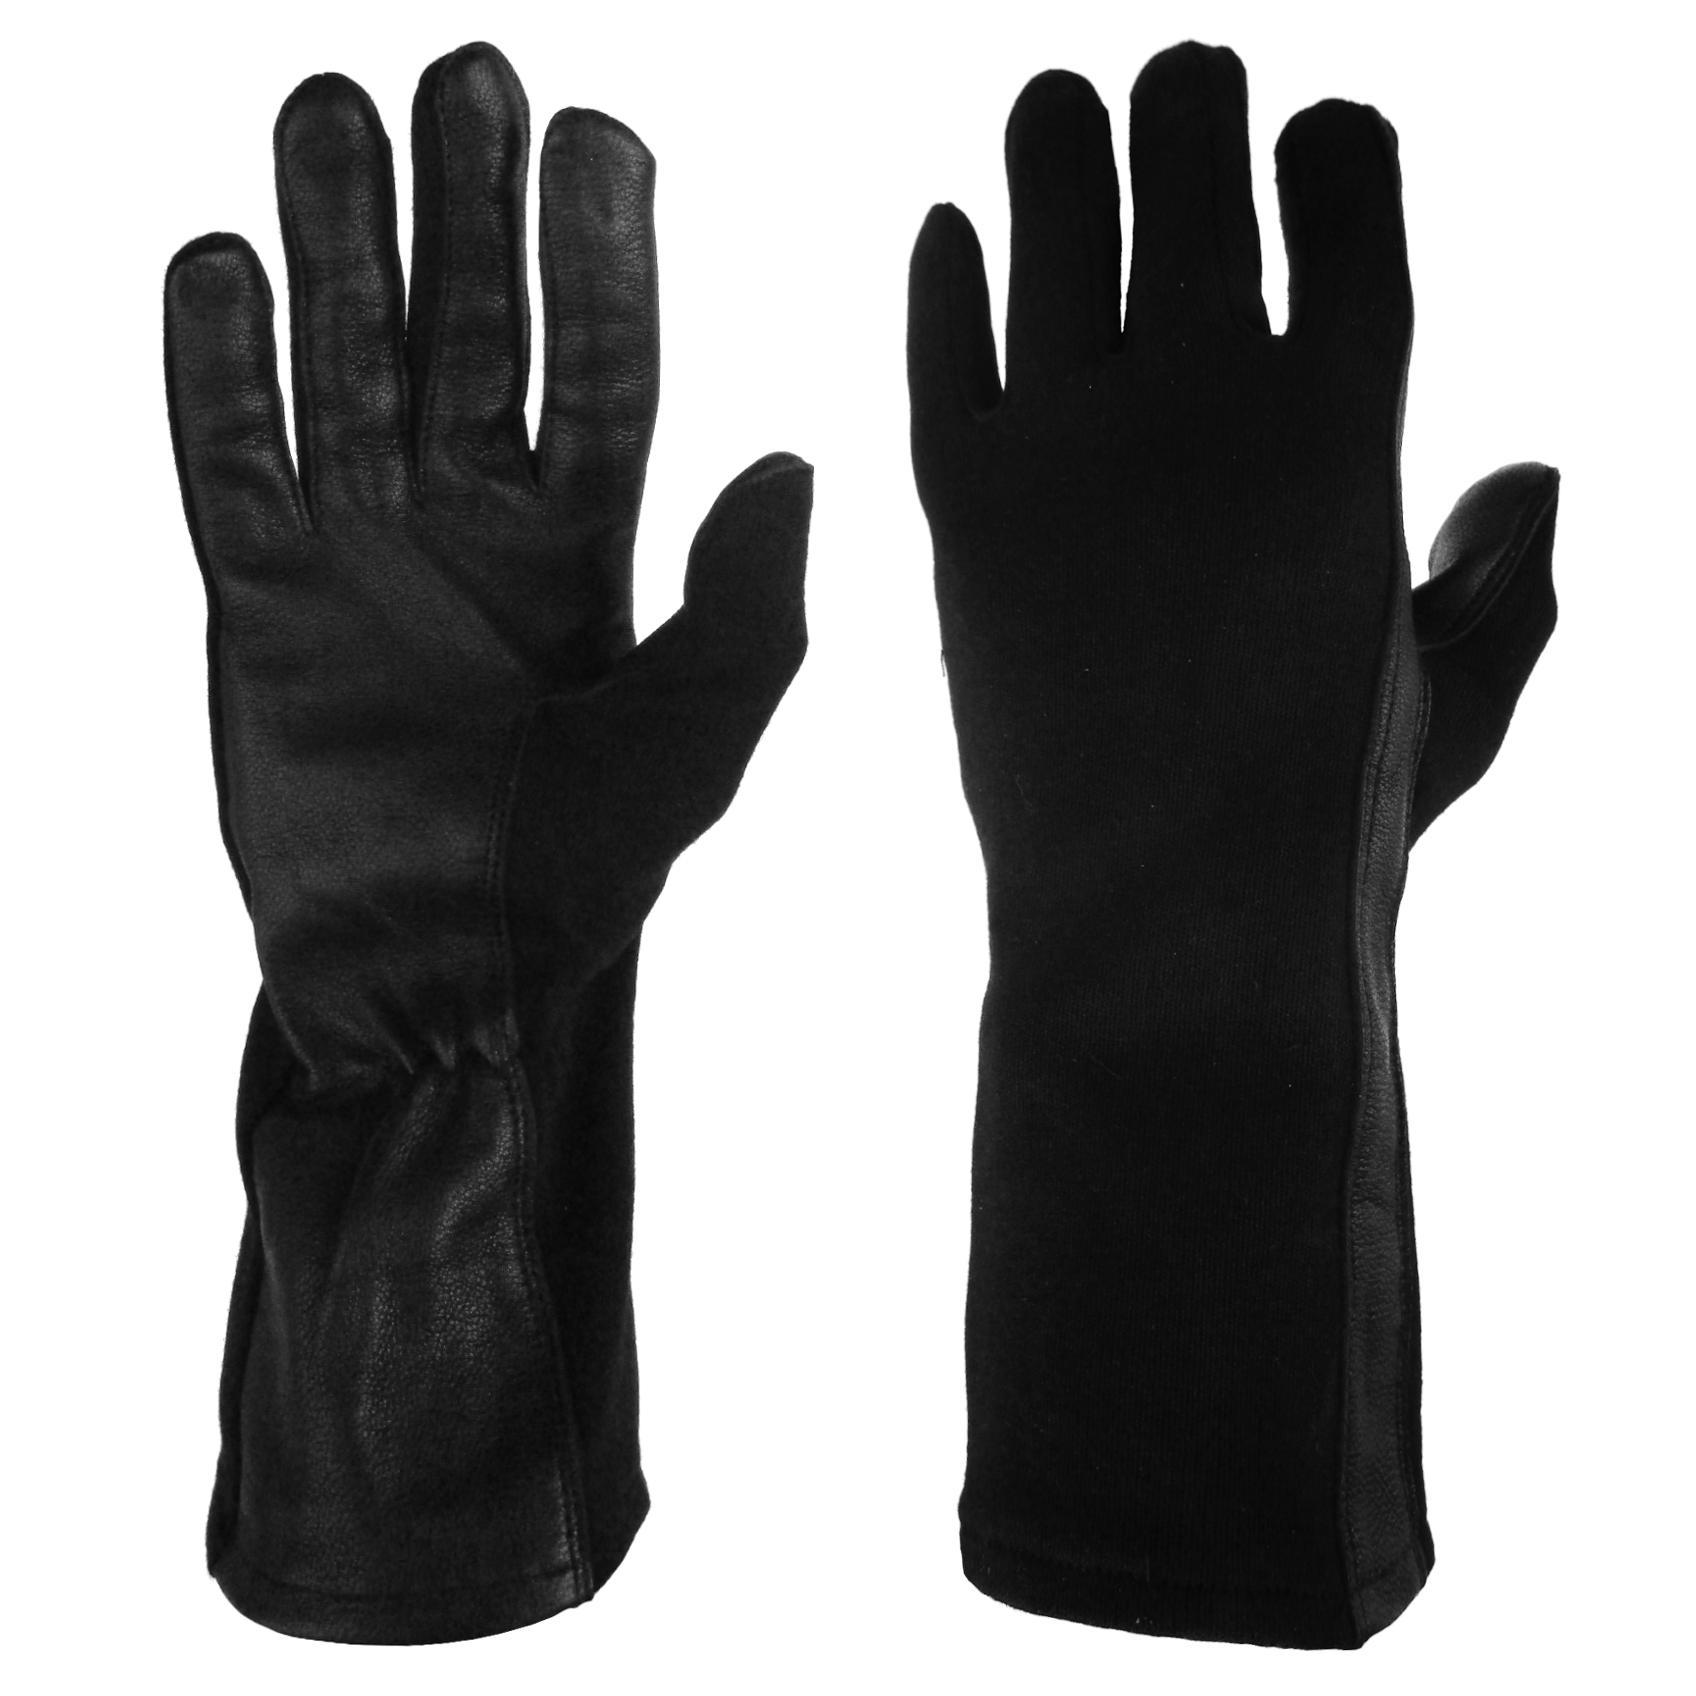 Nomex Pilot Gloves colour Black